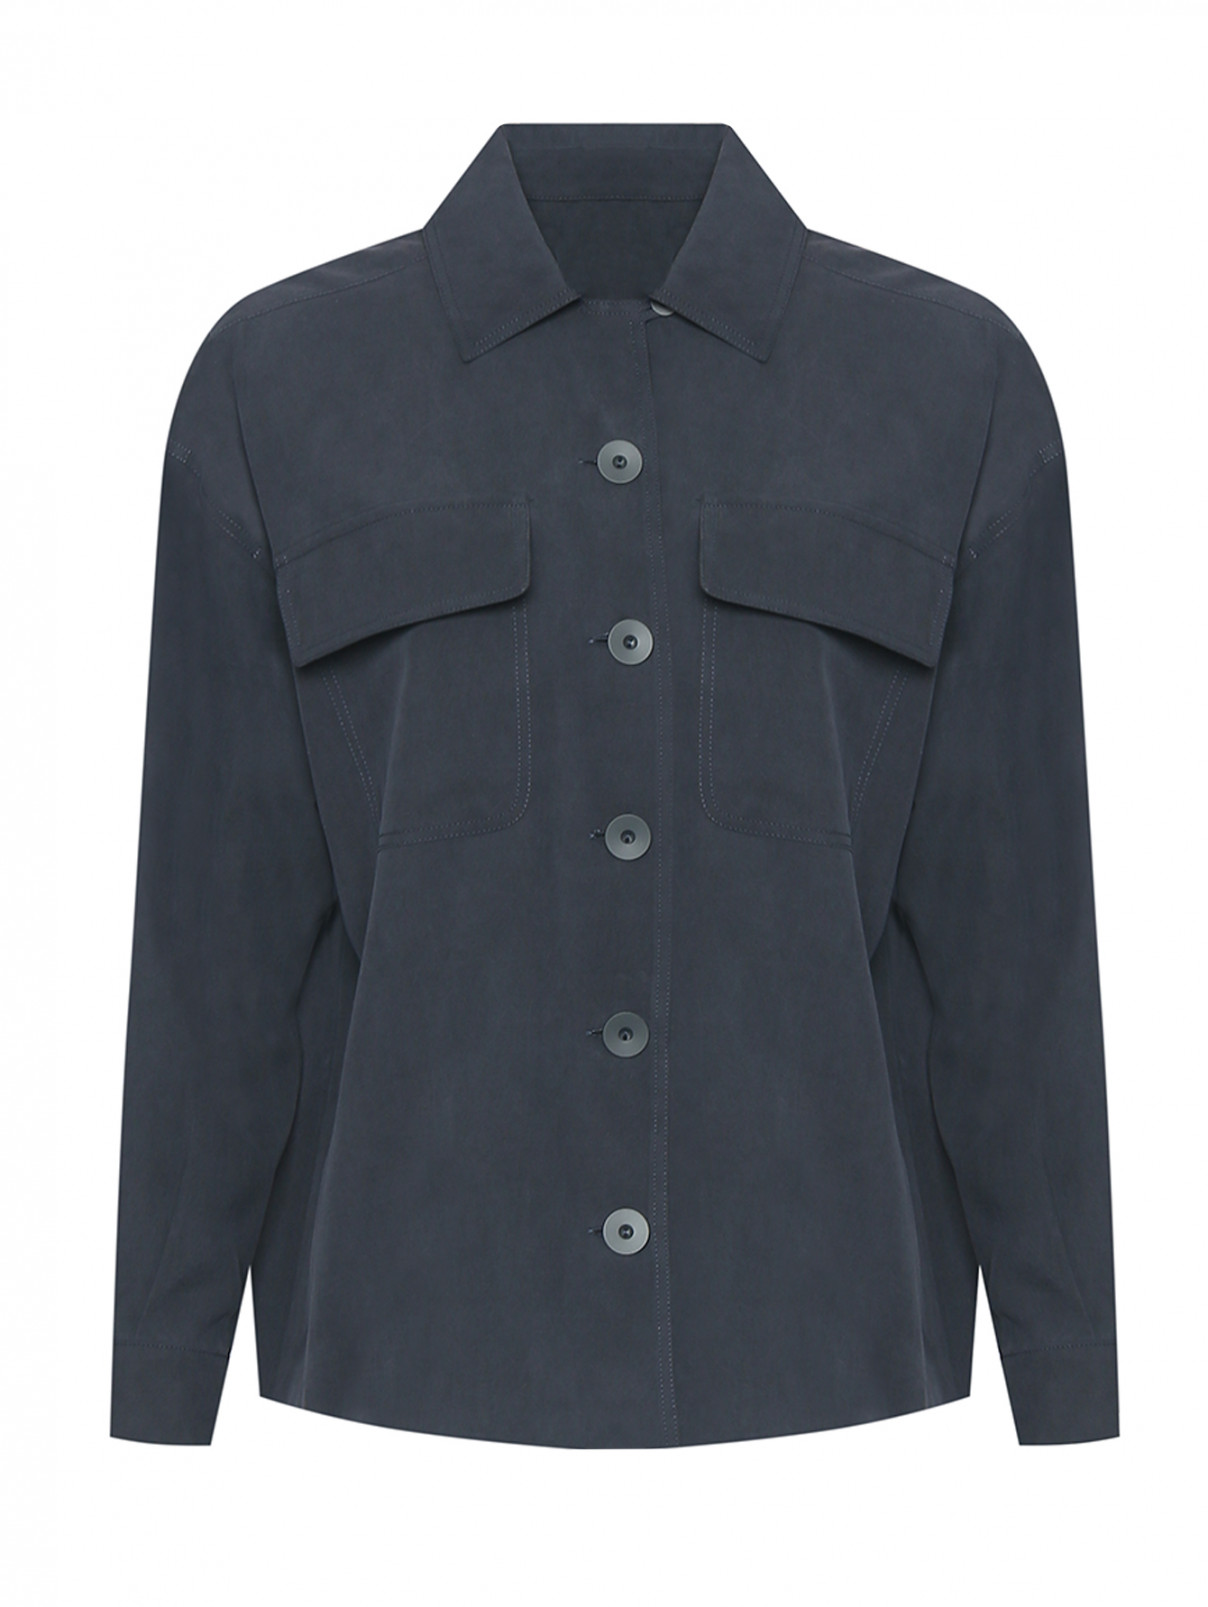 Шелковая блуза на пуговицах Max Mara  –  Общий вид  – Цвет:  Черный